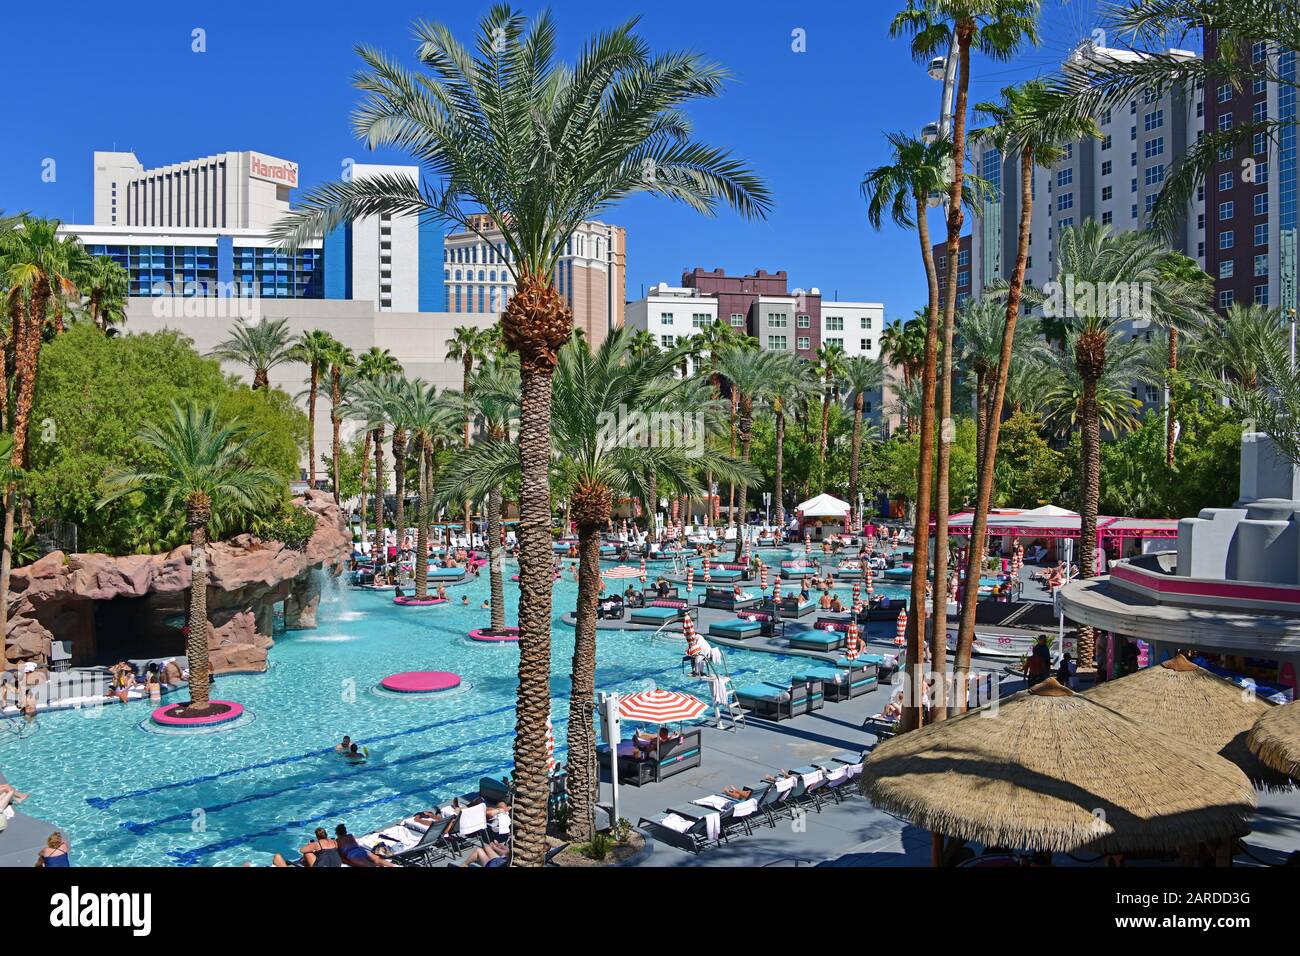 Flamingo Pool: Go Pool & Beach Club One of the Best Pools in Las Vegas